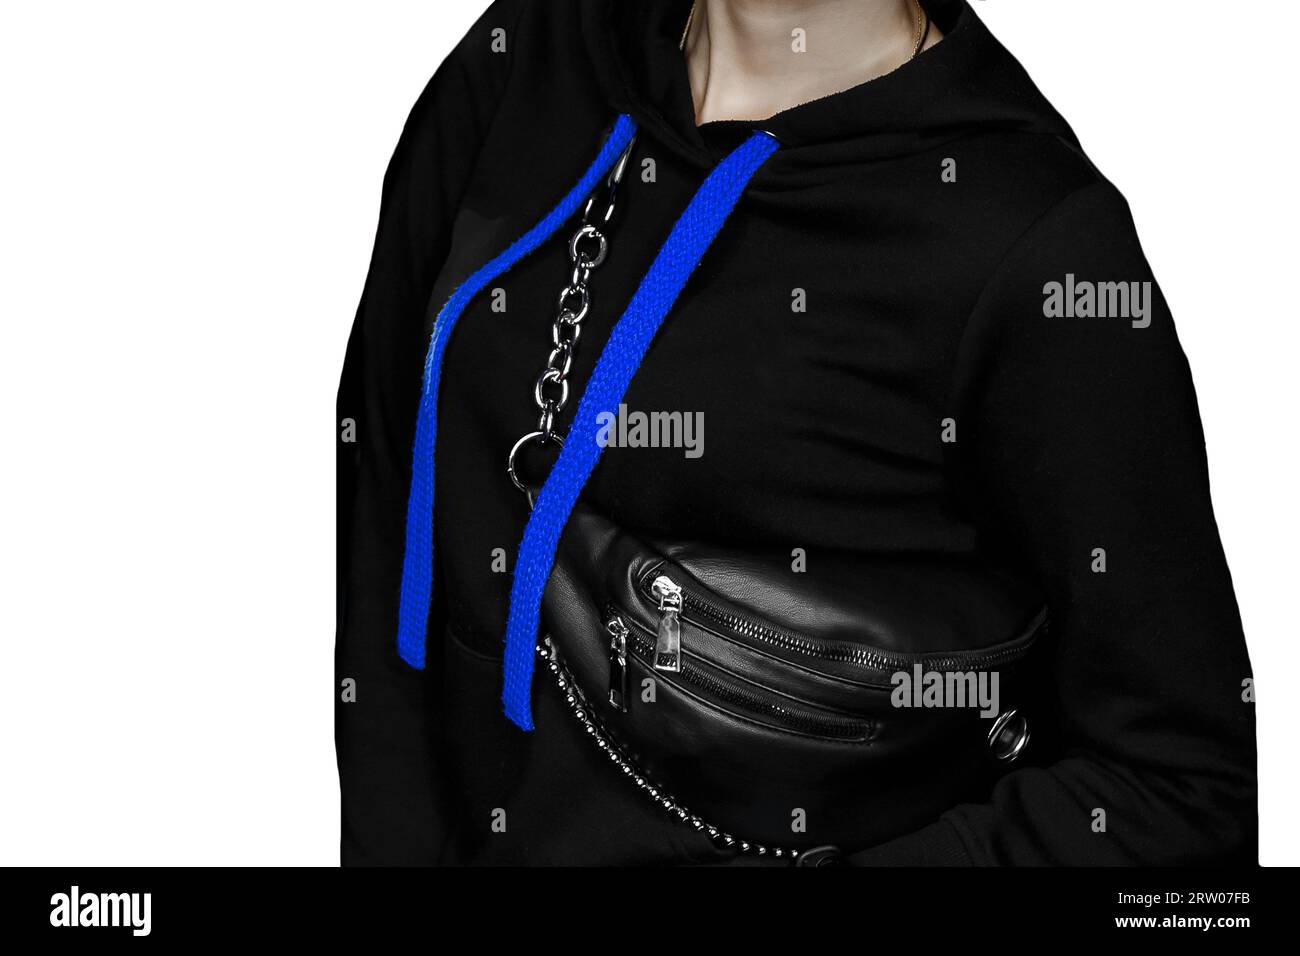 Un vélo noir avec de grands lacets bleus longs, un style féminin de vêtements à la maison et un sac sur un fond blanc isolé. Banque D'Images